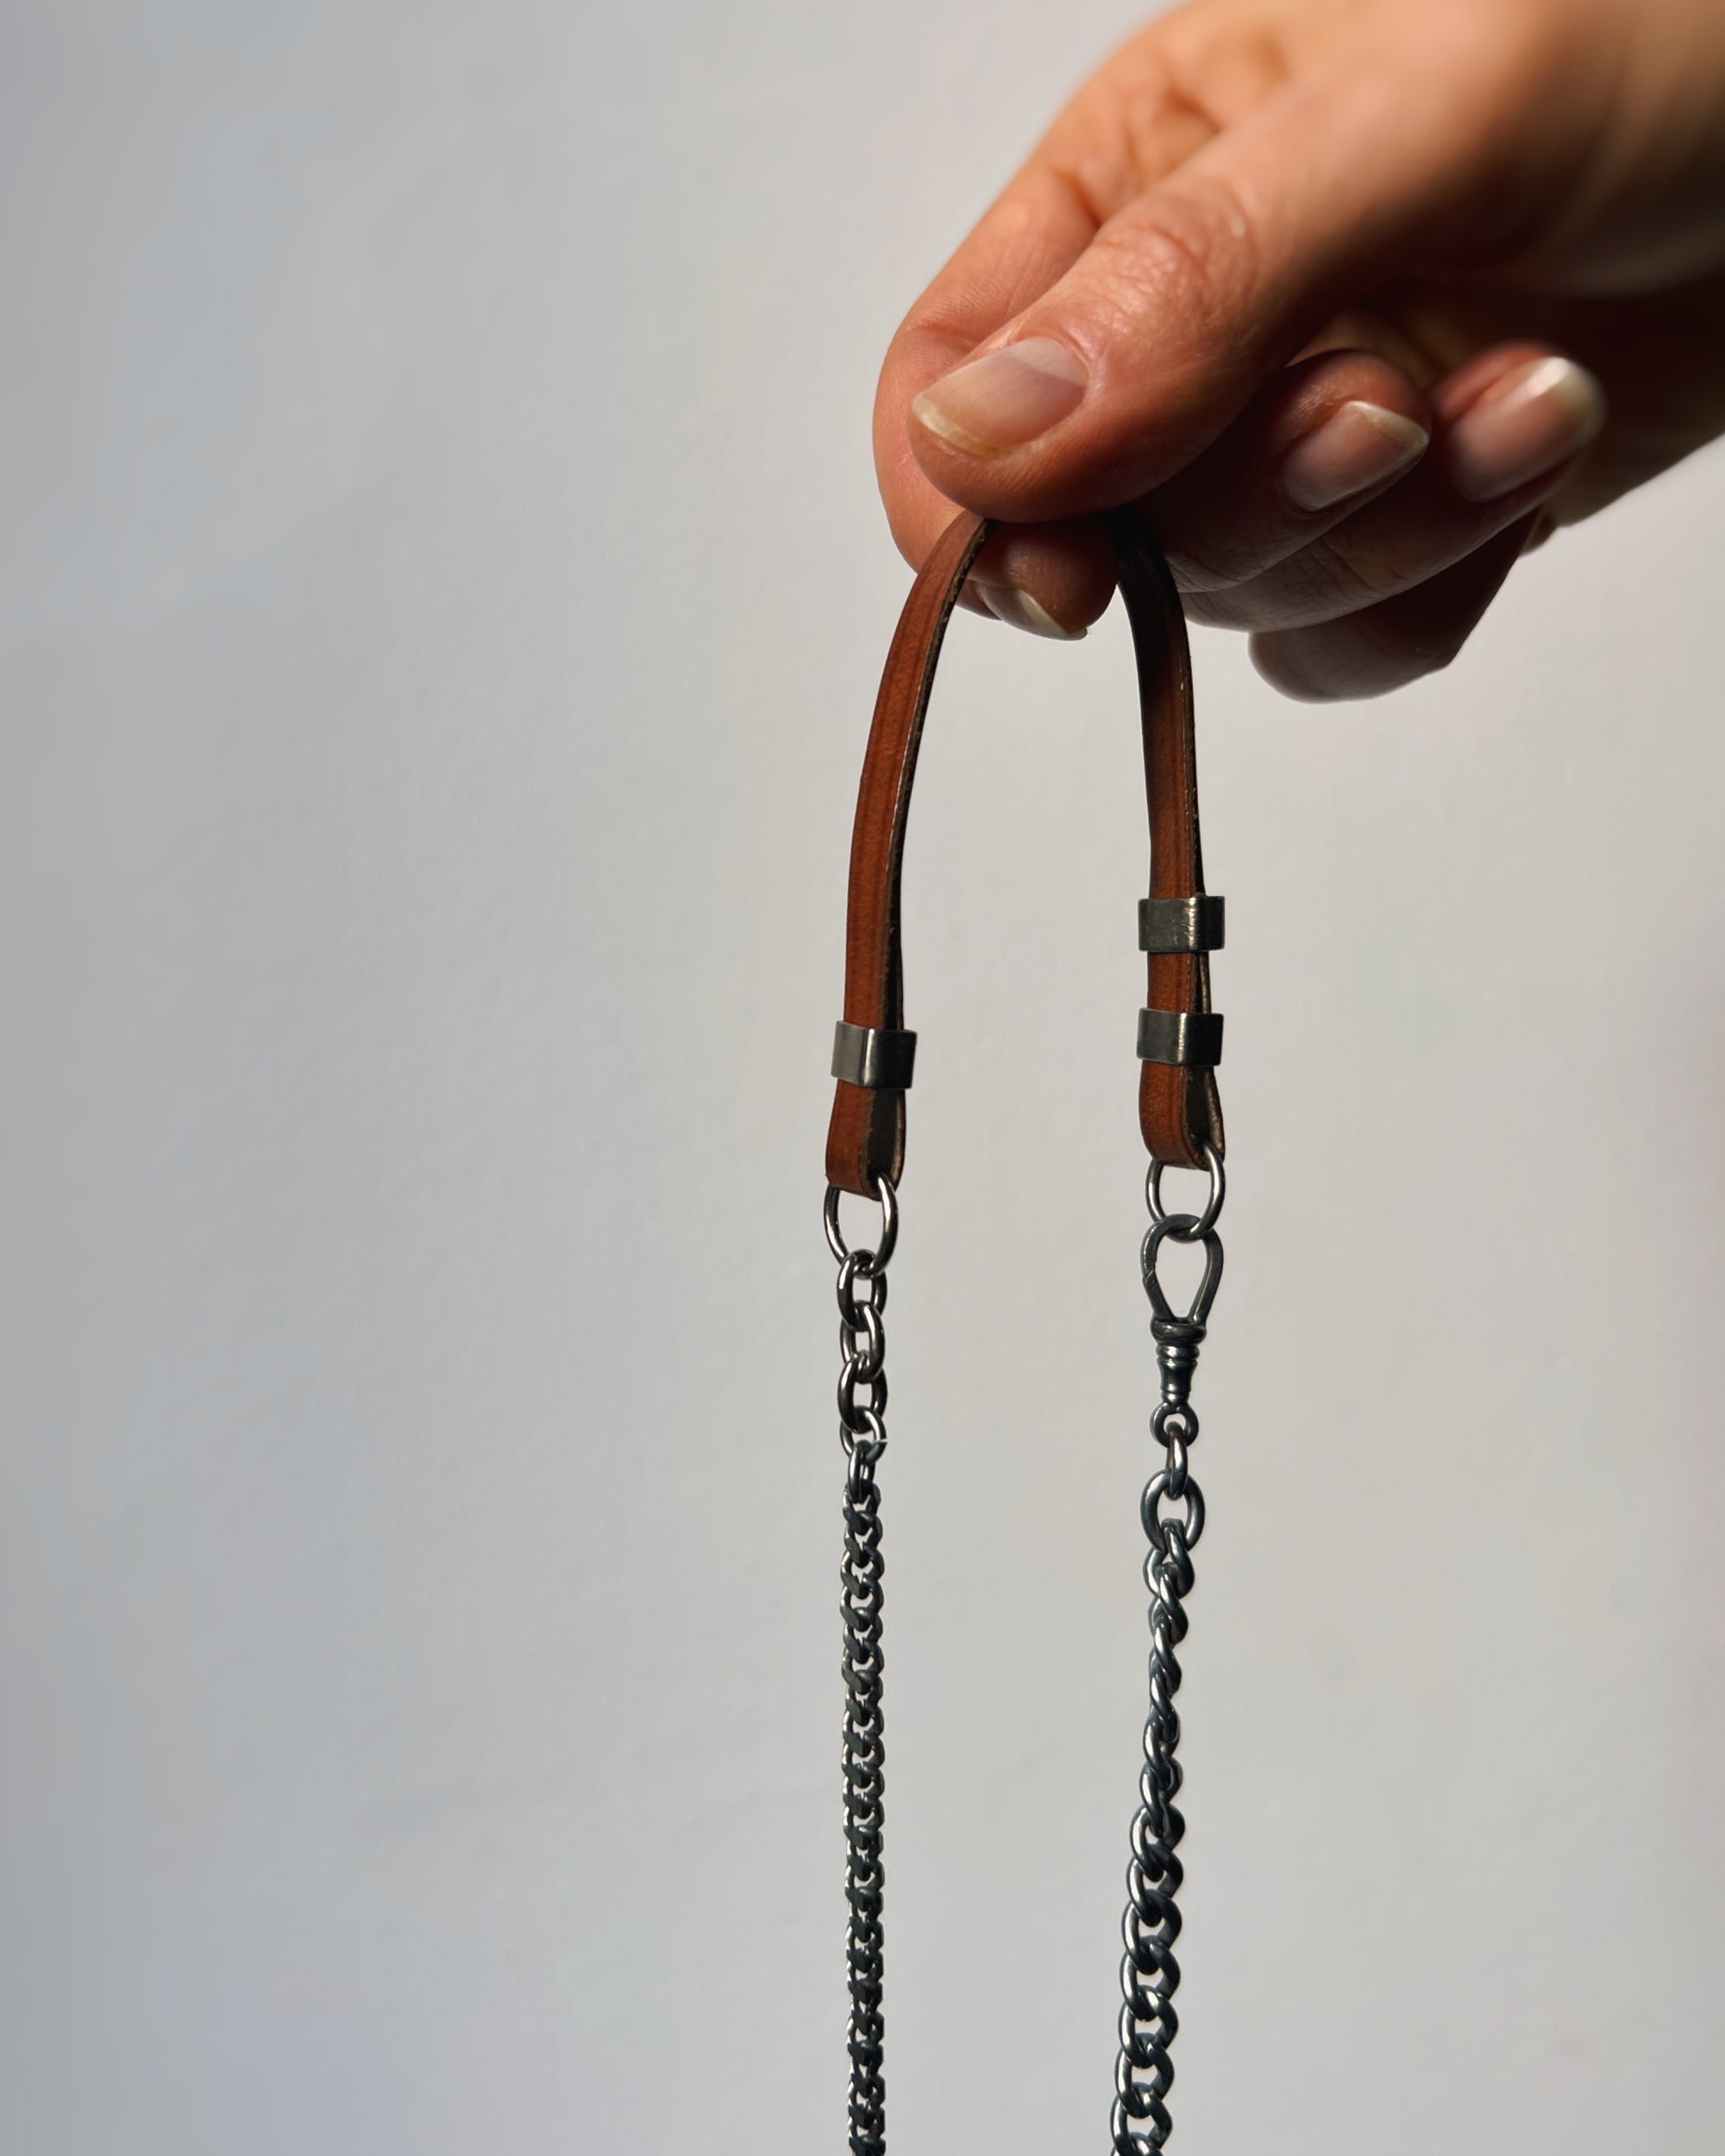 modern marcel : vintage key necklace